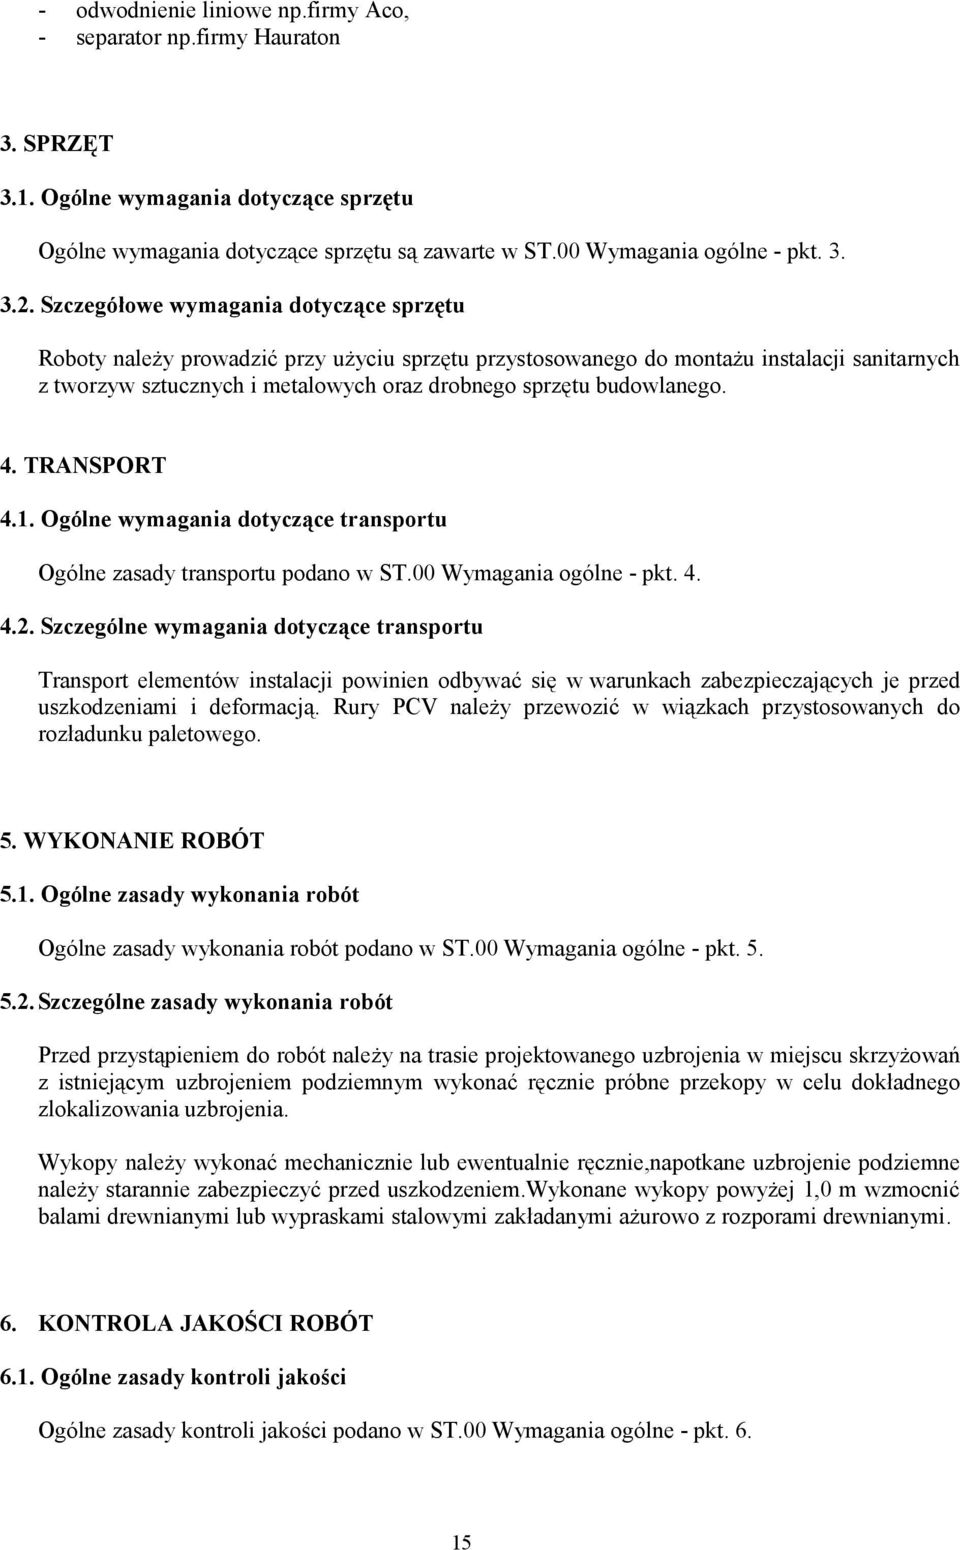 budowlanego. 4. TRANSPORT 4.1. Ogólne wymagania dotyczące transportu Ogólne zasady transportu podano w ST.00 Wymagania ogólne - pkt. 4. 4.2.